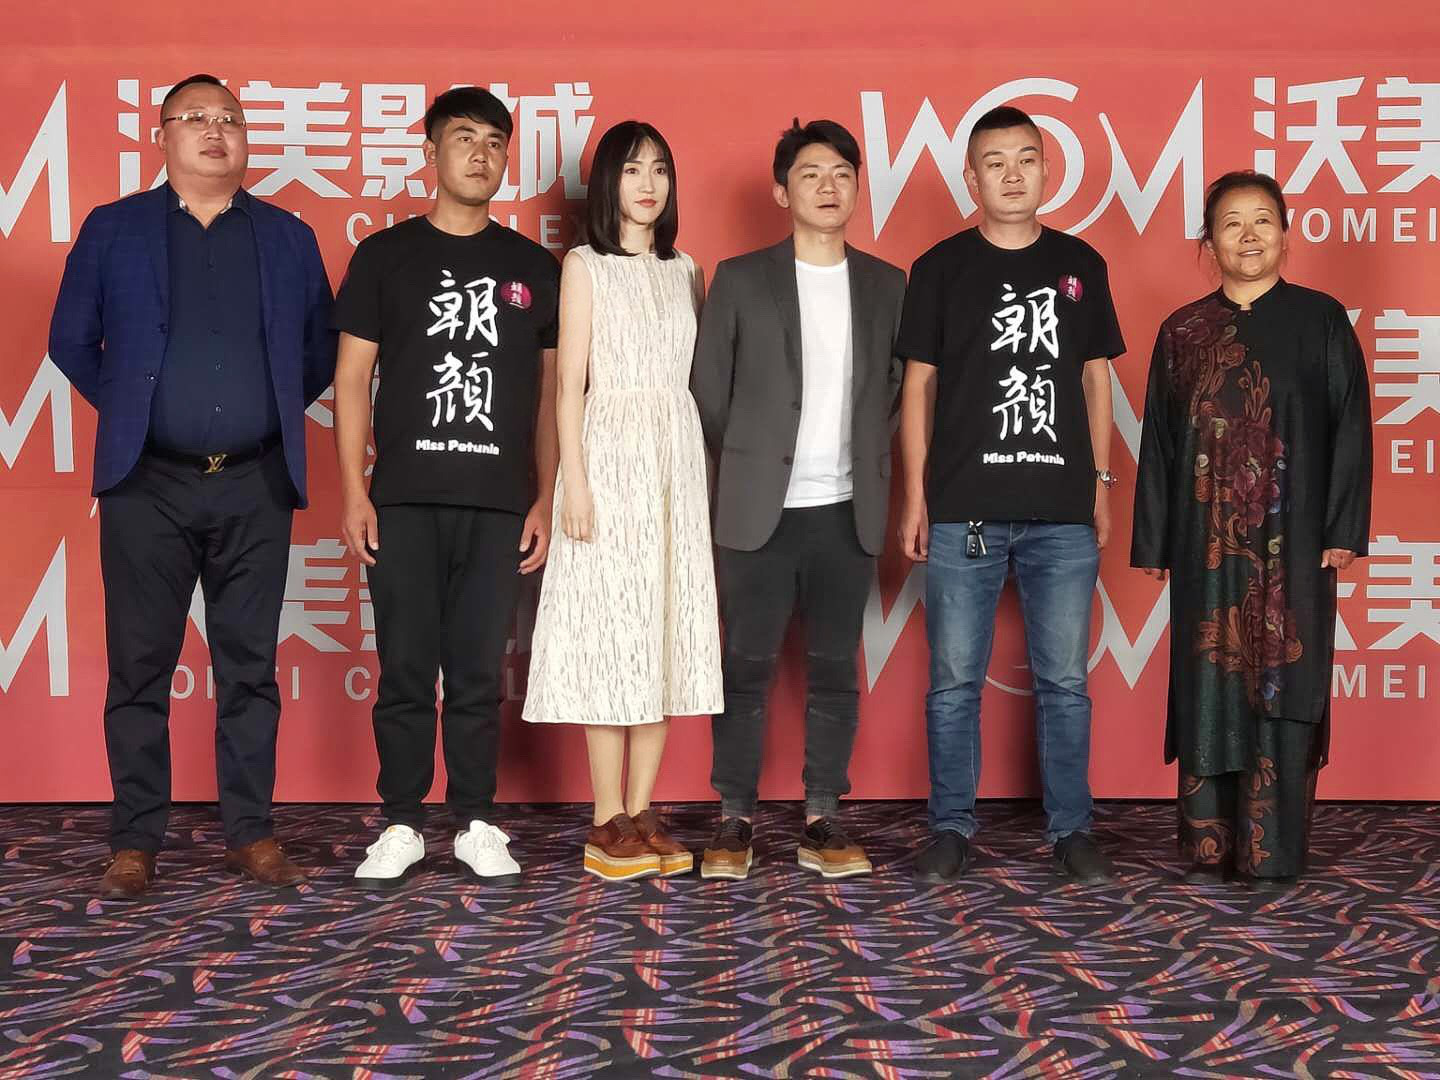 《朝颜》在京举行首映礼 获评“稀缺女性题材佳作”